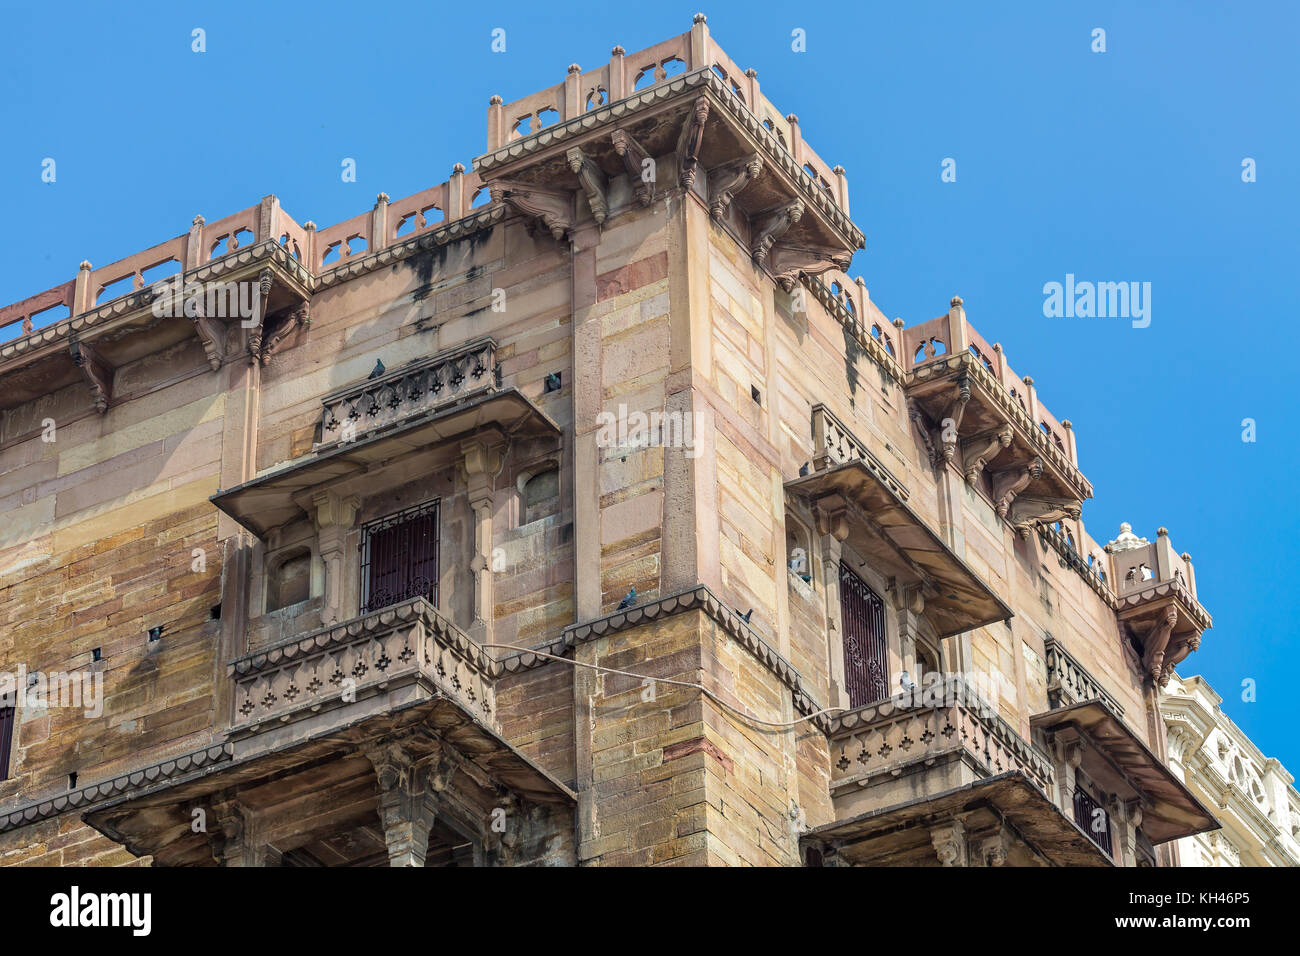 Royal Palace edificio residenziale situato presso il fiume Gange banca a varanasi india. Foto Stock